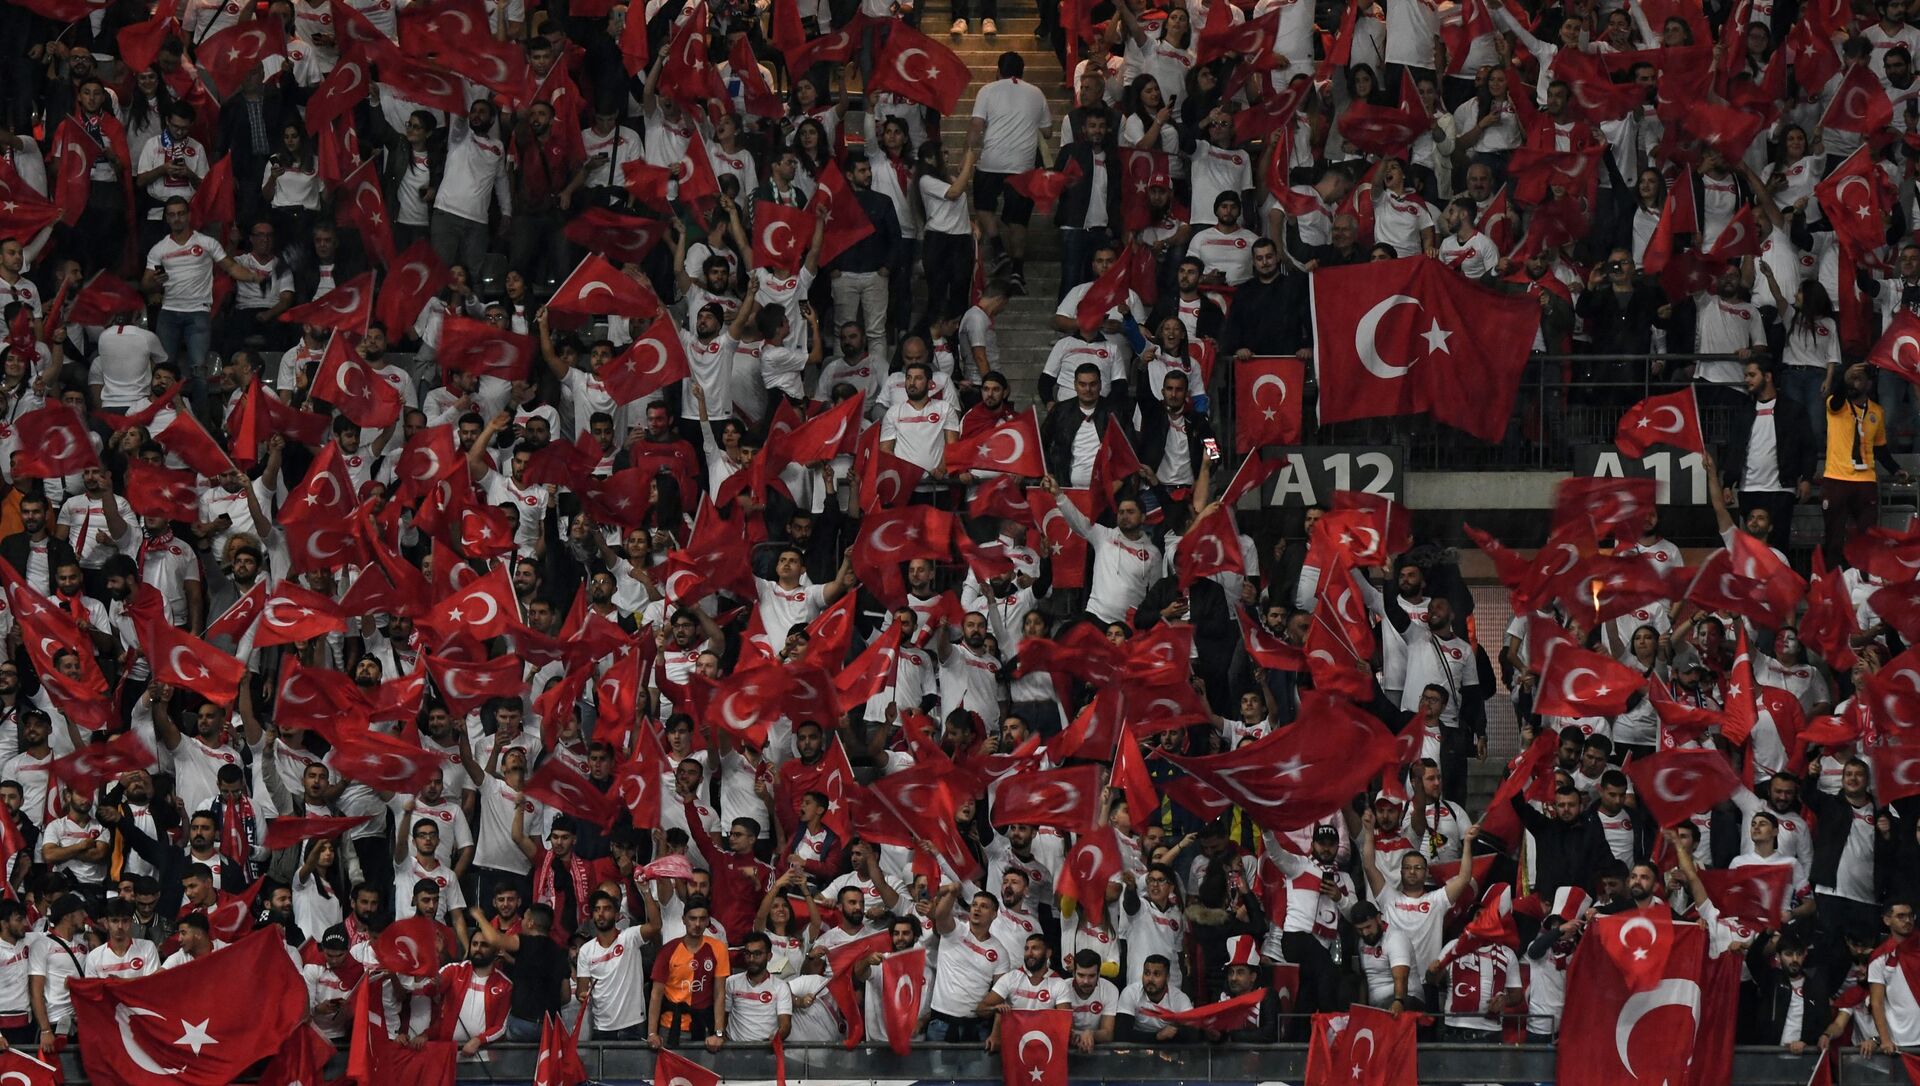 Фанаты сборной Турции на стадионе, фото из архива - Sputnik Азербайджан, 1920, 08.06.2021